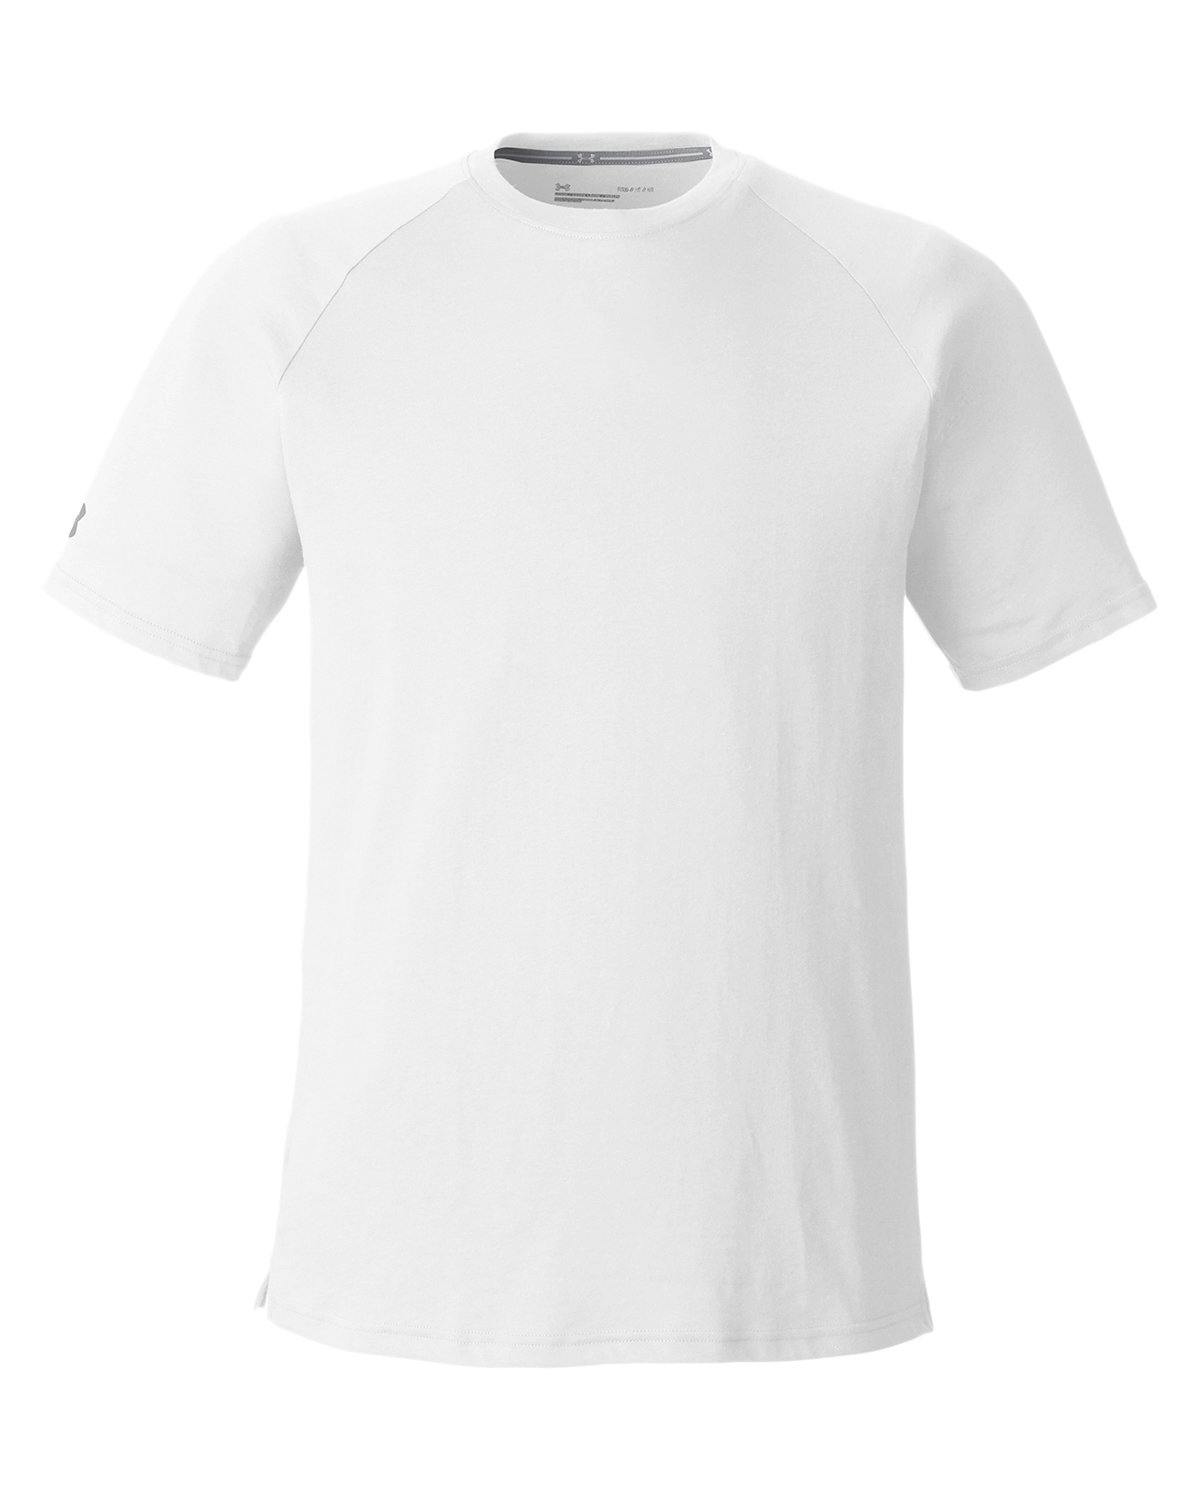 Image for Unisex Athletics T-Shirt